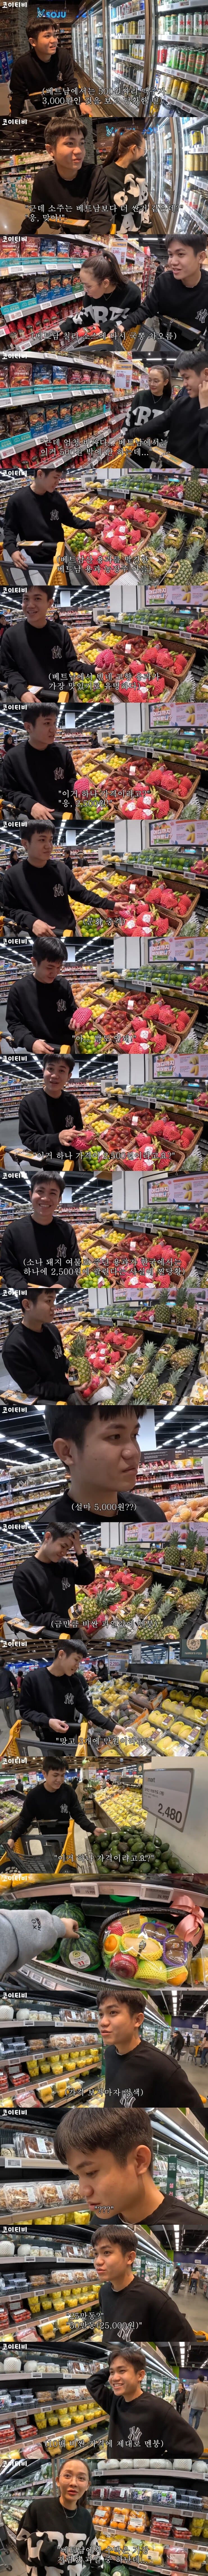 한국 과일 가격에 화들짝 놀란 외국인